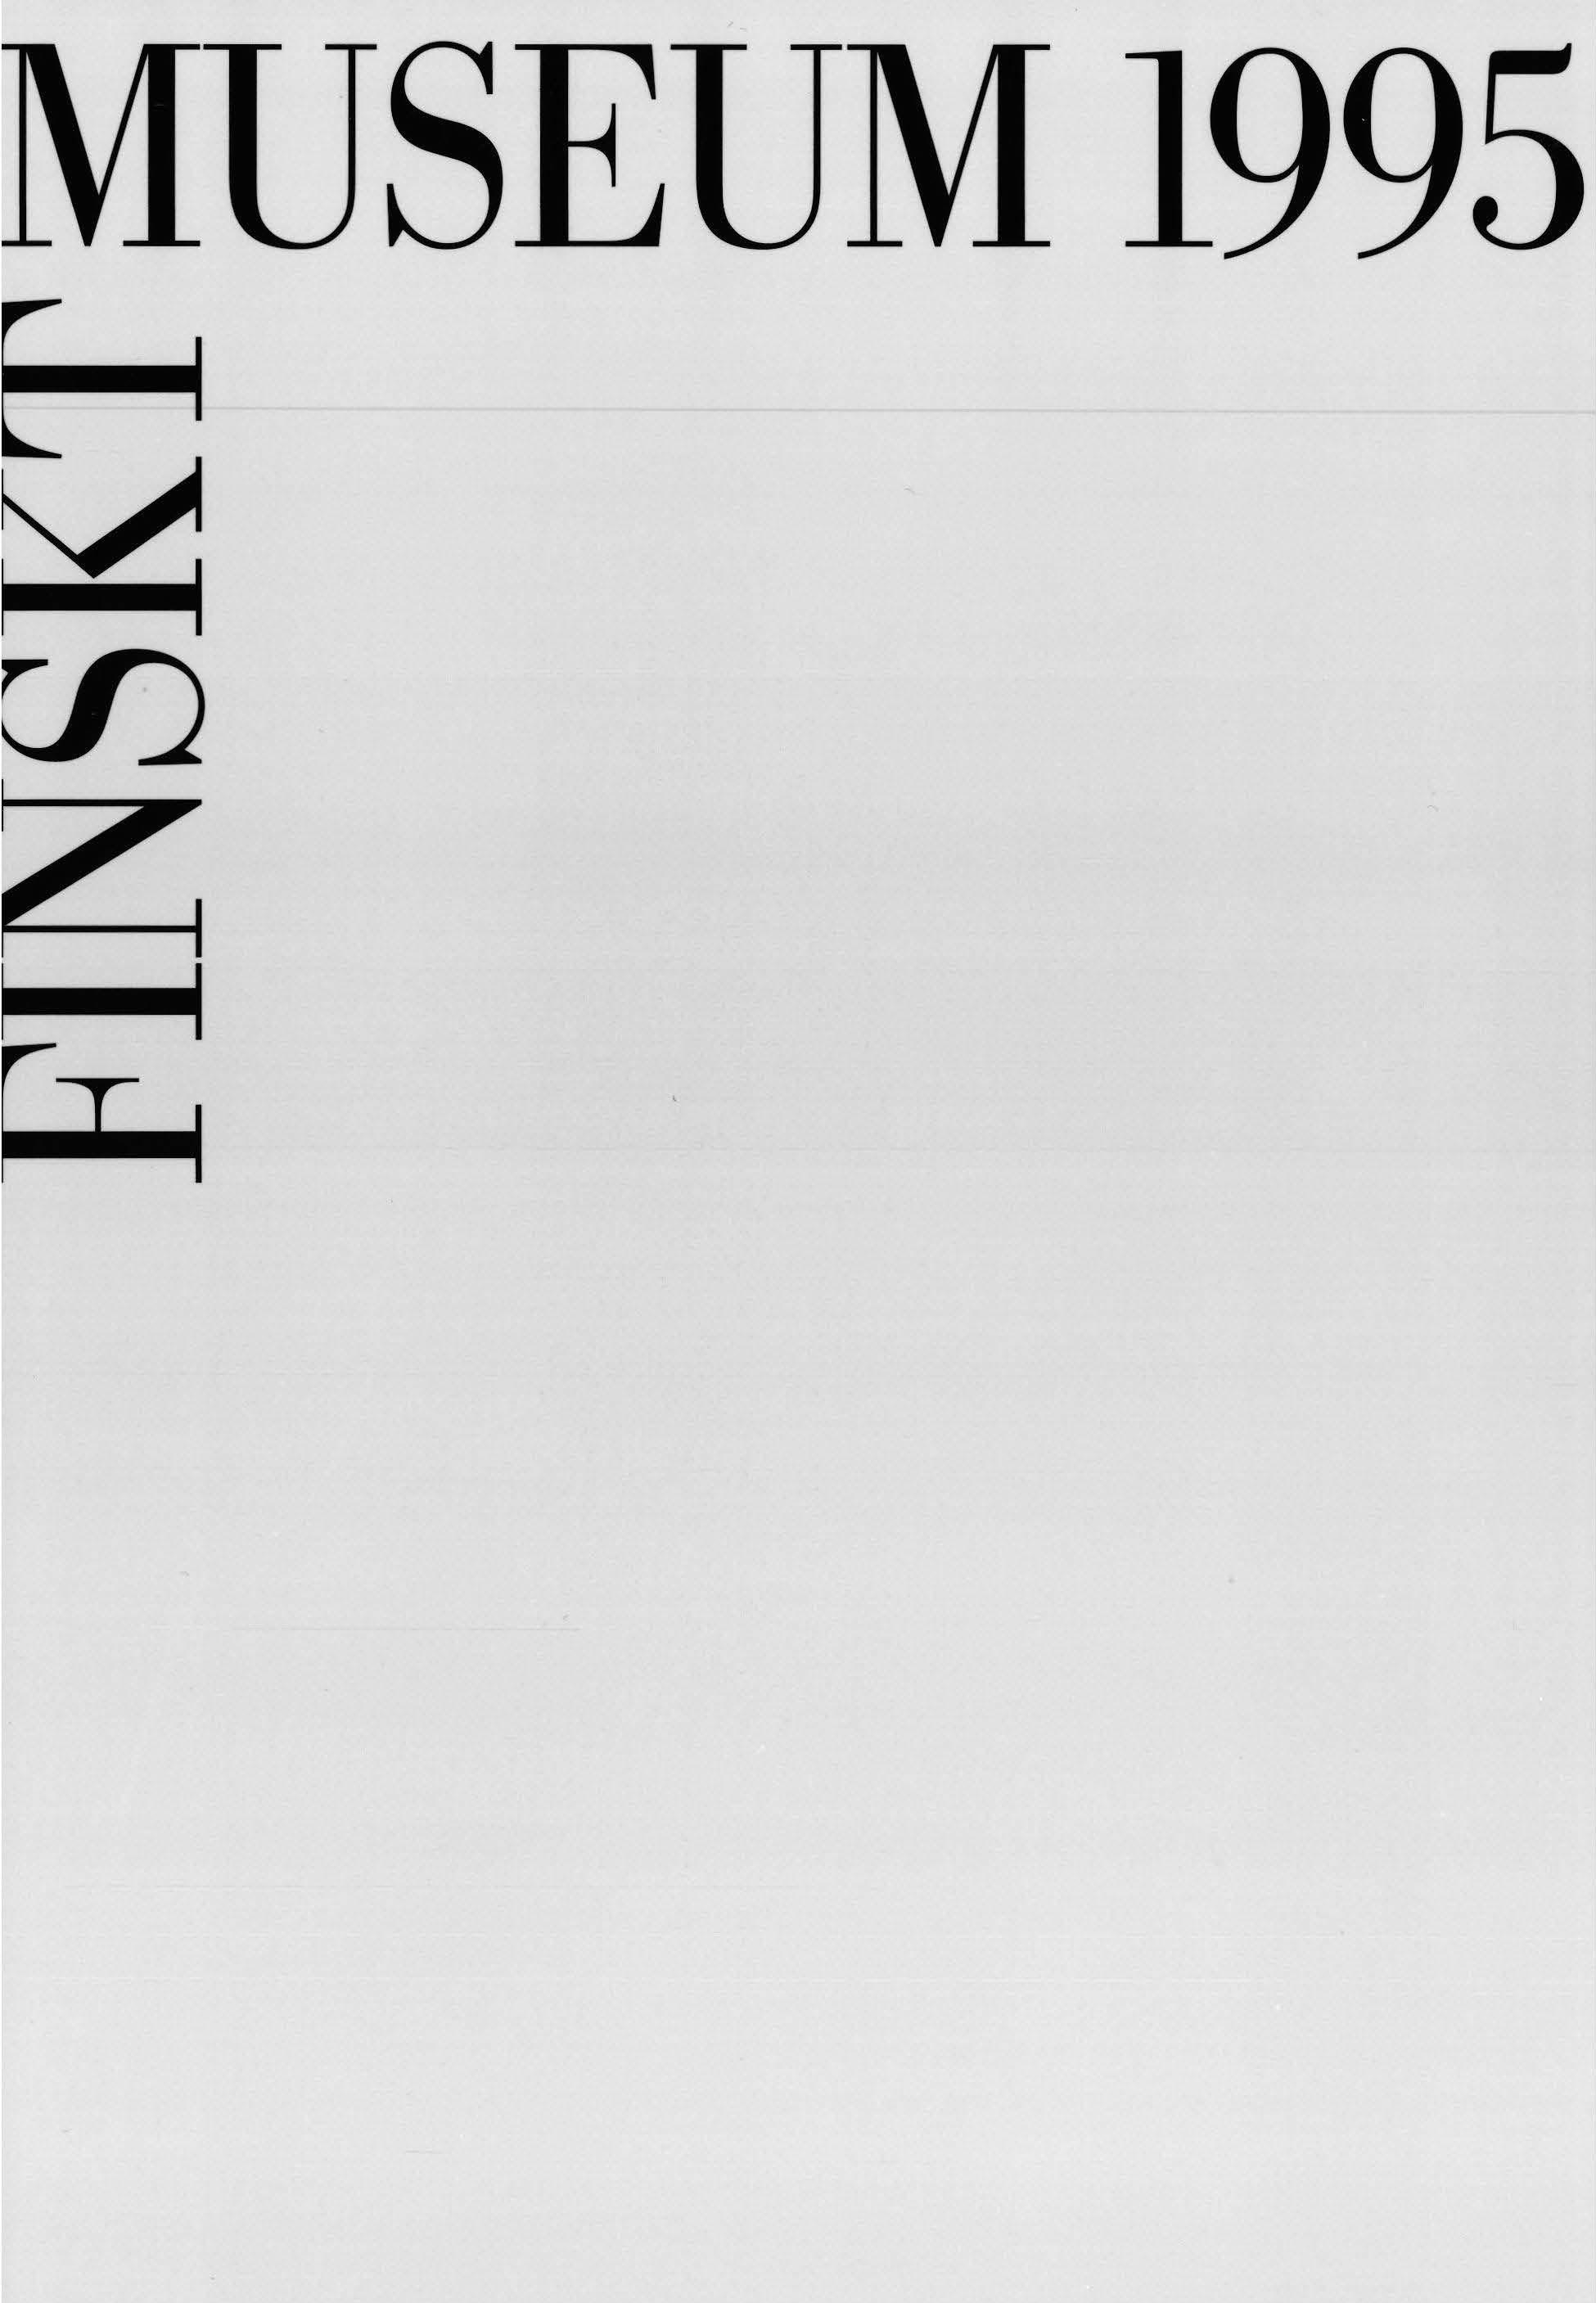 					Visa Vol 102: Finskt Museum 1995
				